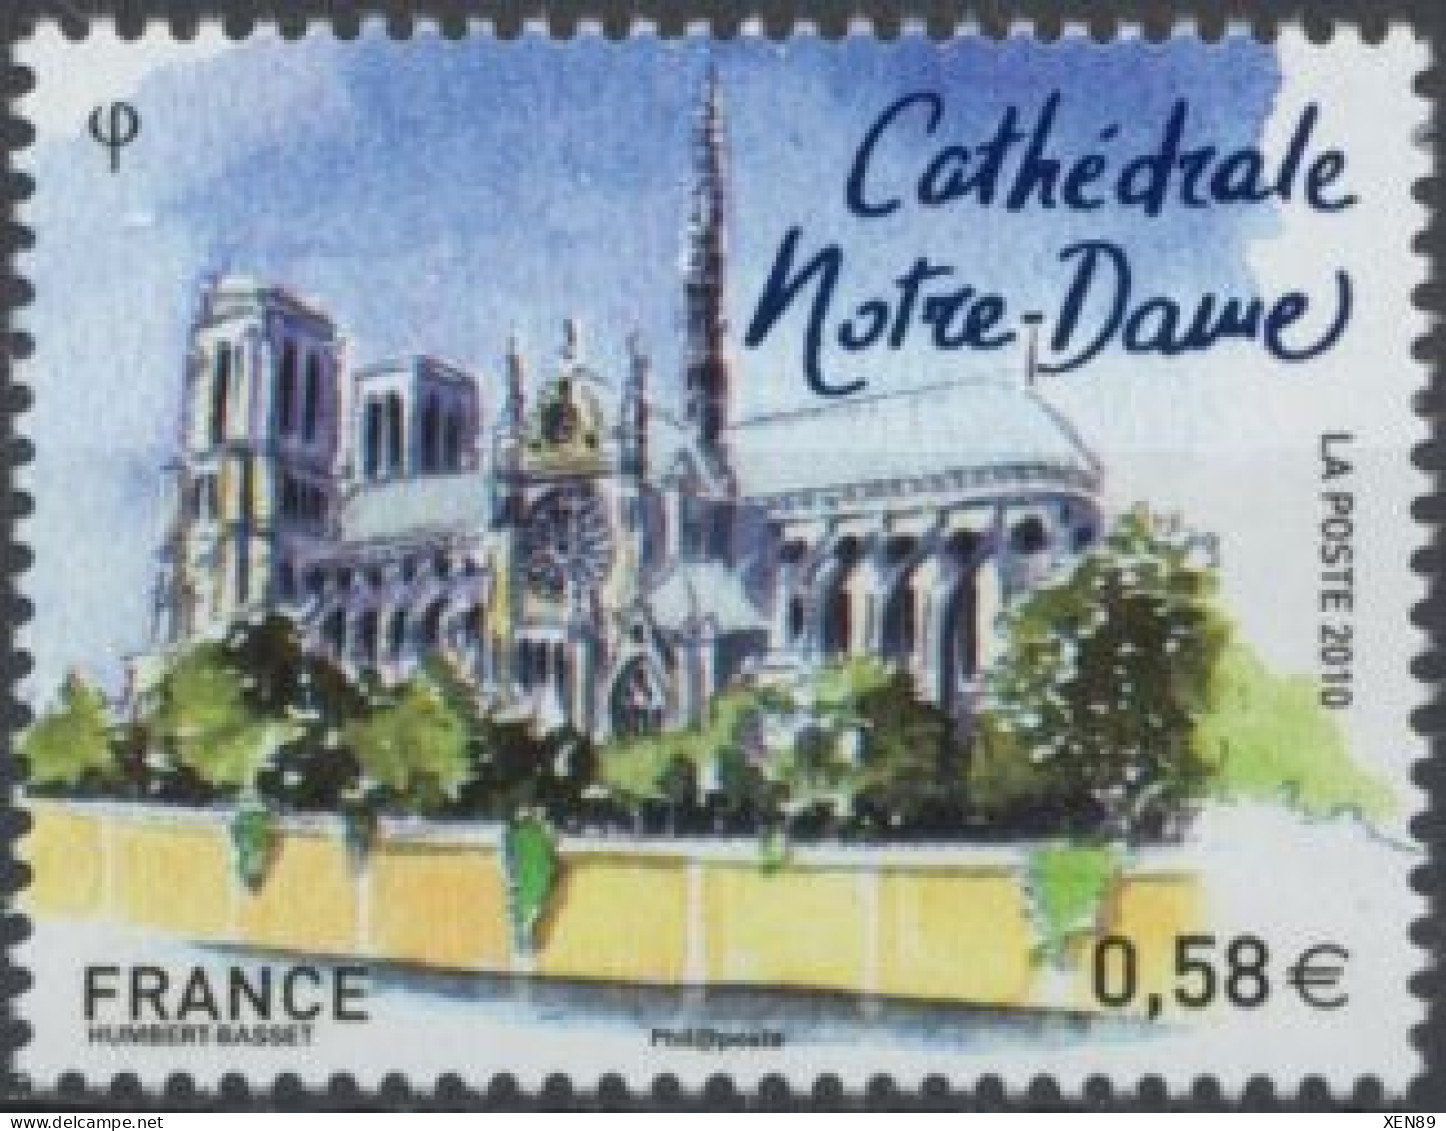 2010 - 4515 - Capitale Européennes - Paris - Cathédrale Notre-Dame - Ungebraucht